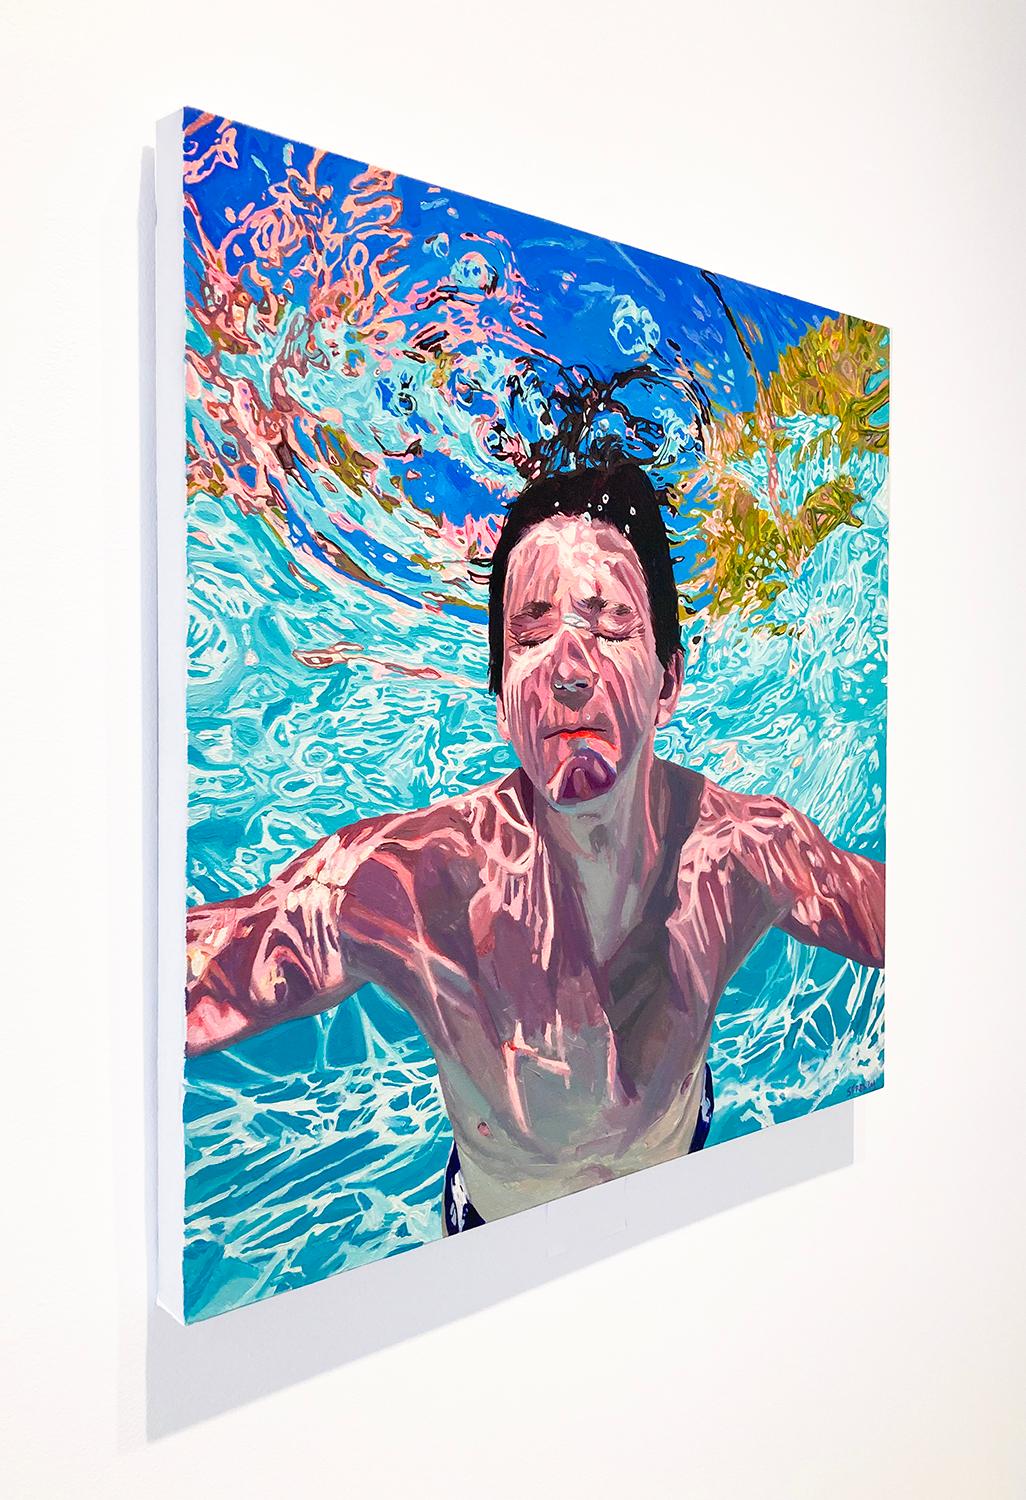 Le bon côté des choses : Peinture figurative photoréaliste d'un jeune homme dans une piscine bleu aquatique  - Photoréalisme Painting par Samantha French